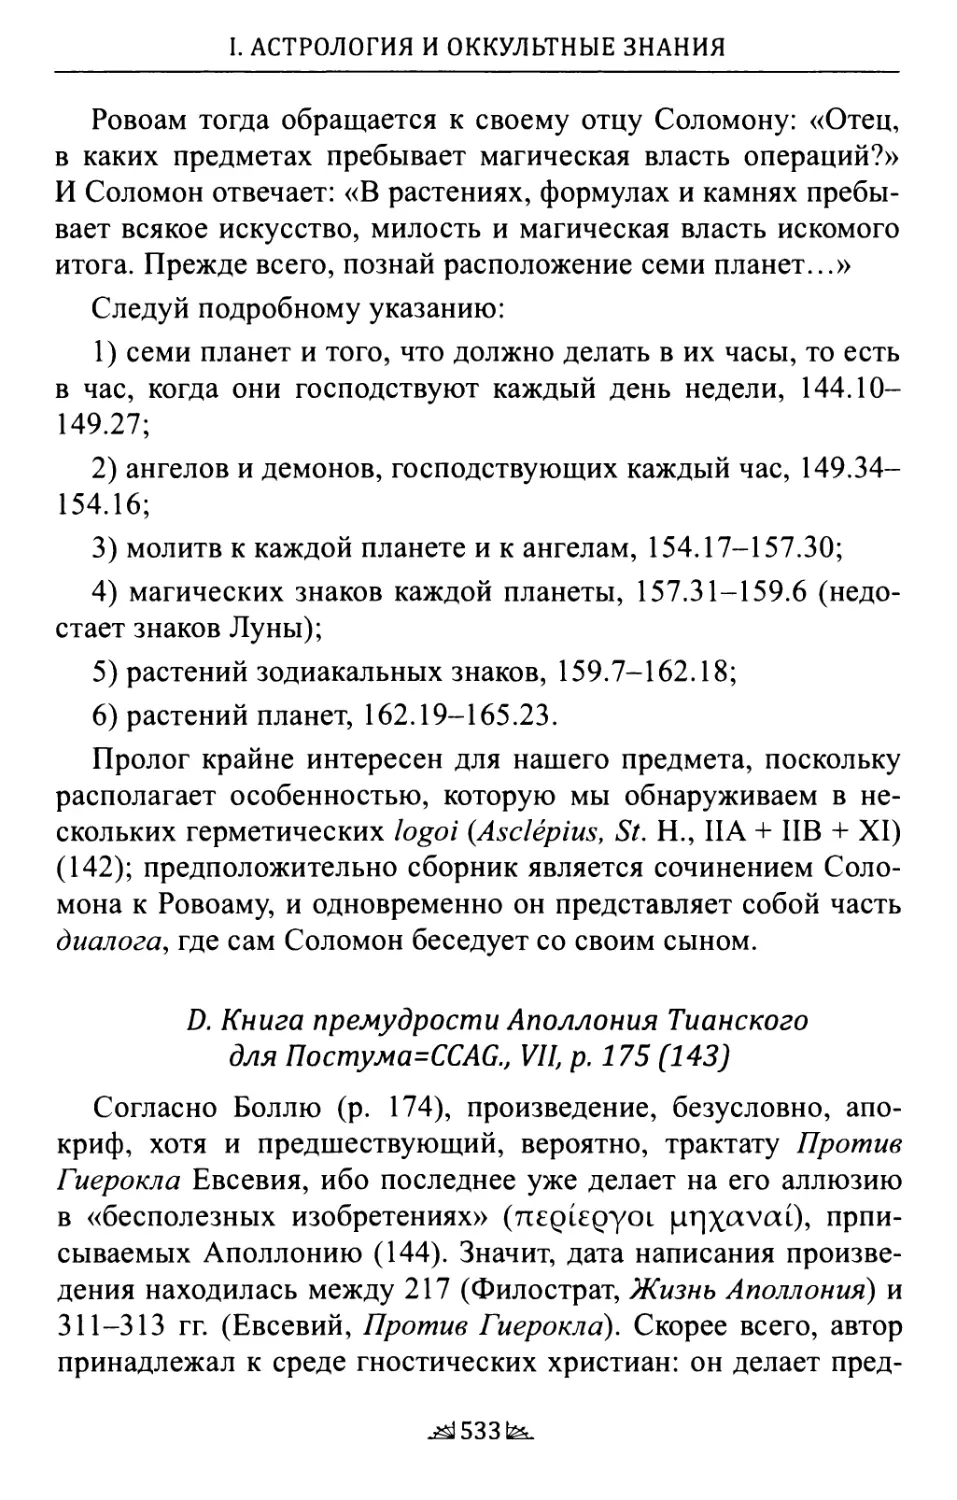 D. Книга премудрости Аполлония Тианского для Постума=ССАС, VII, р. 175